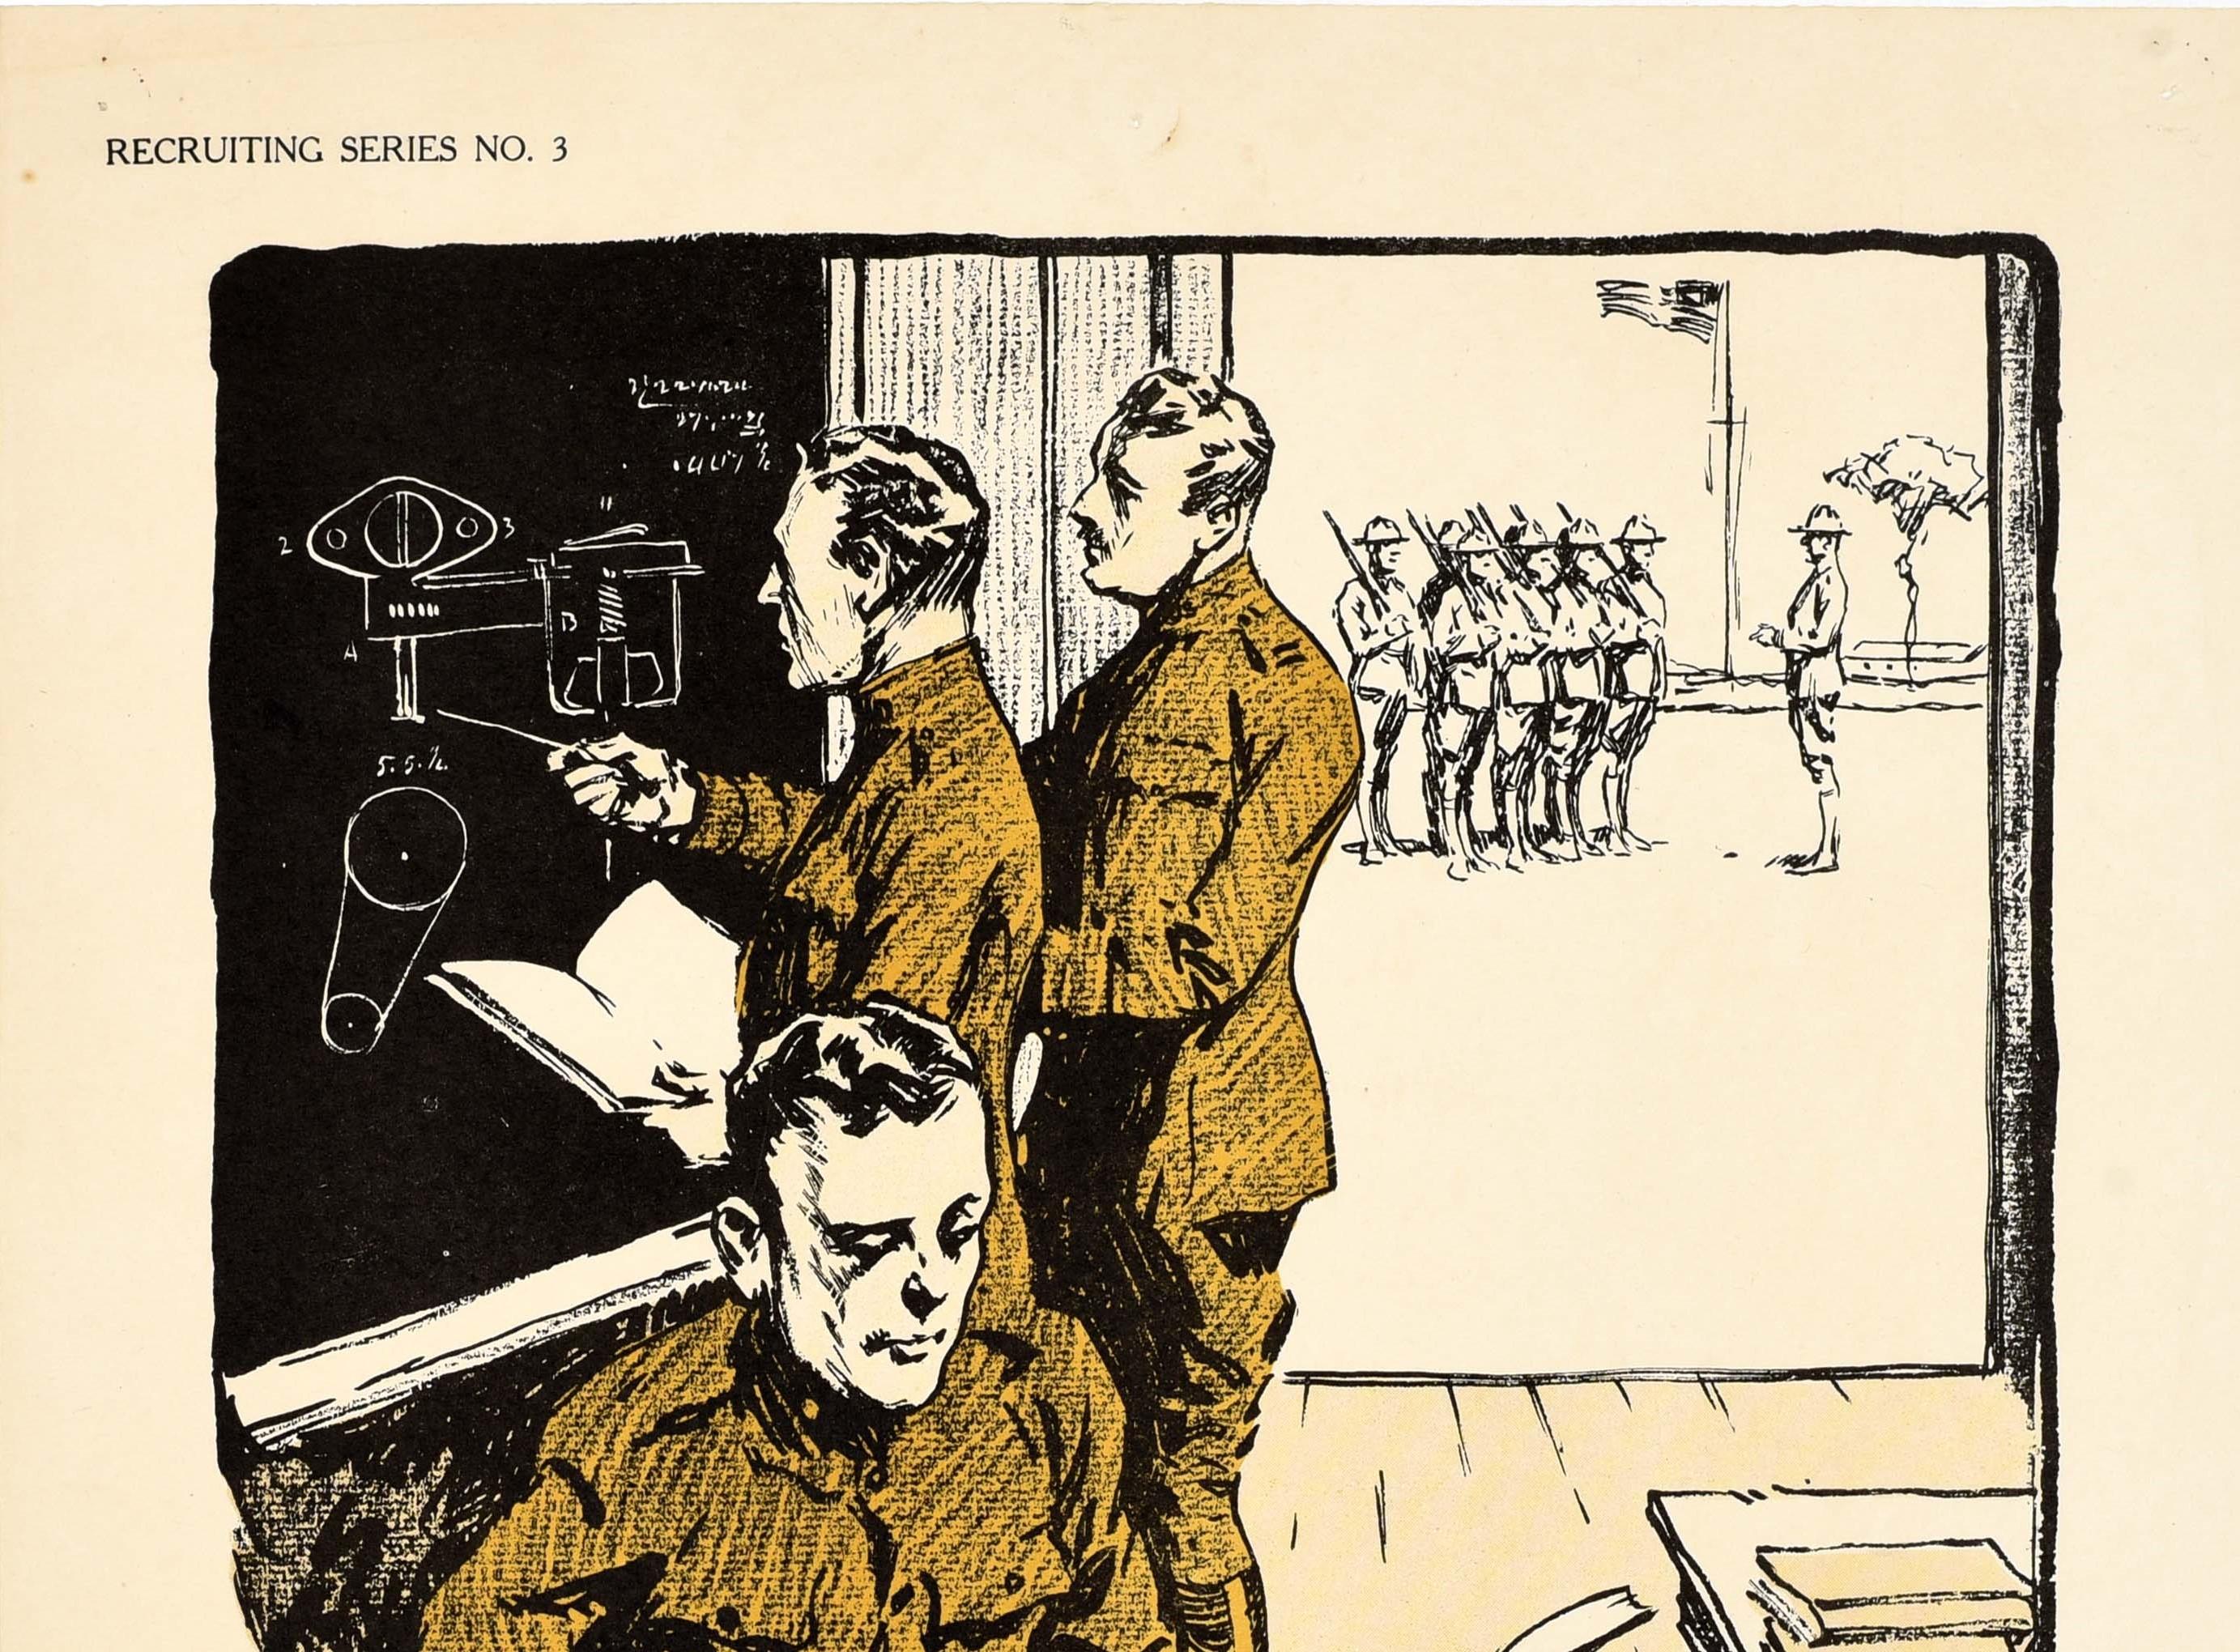 Cartel original antiguo de reclutamiento militar de la Primera Guerra Mundial - El U.S. Army quiere hombres de verdad Únete a la Universidad de Caqui y prepárate para un rango más alto en la vida civil o para una comisión en el ejército Ganas